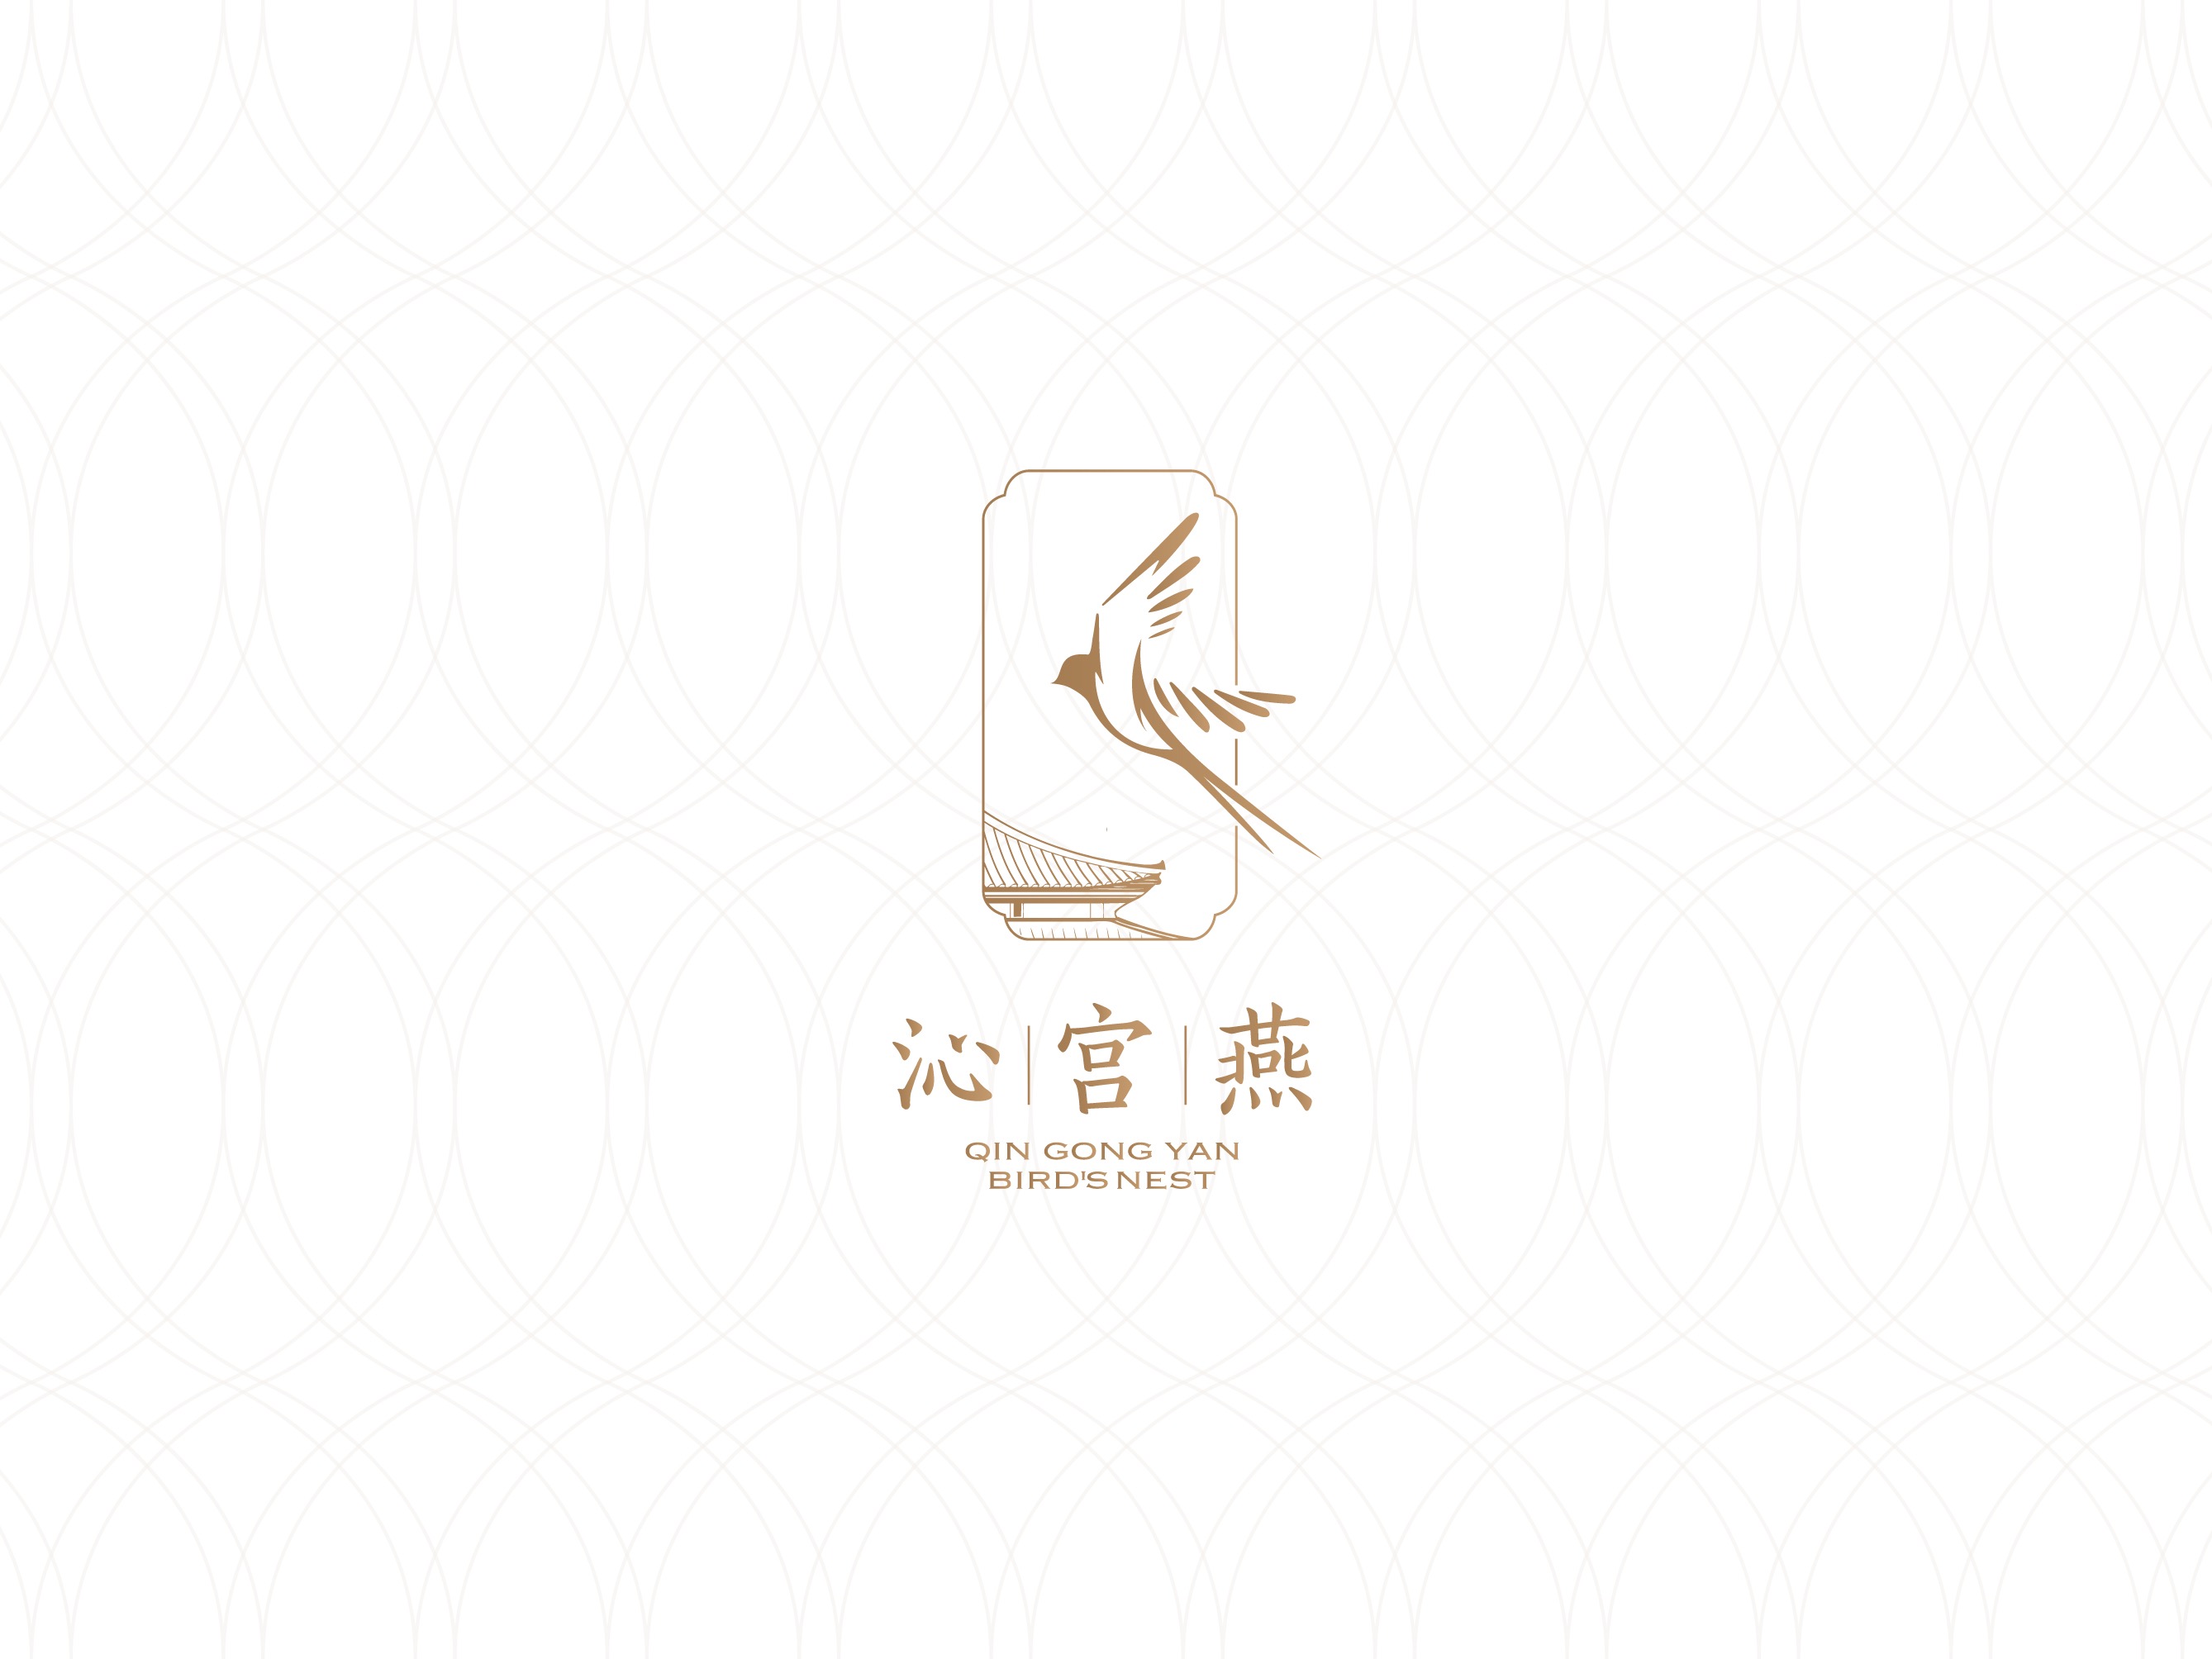 沁宫宴 qingongyan  bird's nest 燕窝品牌设计